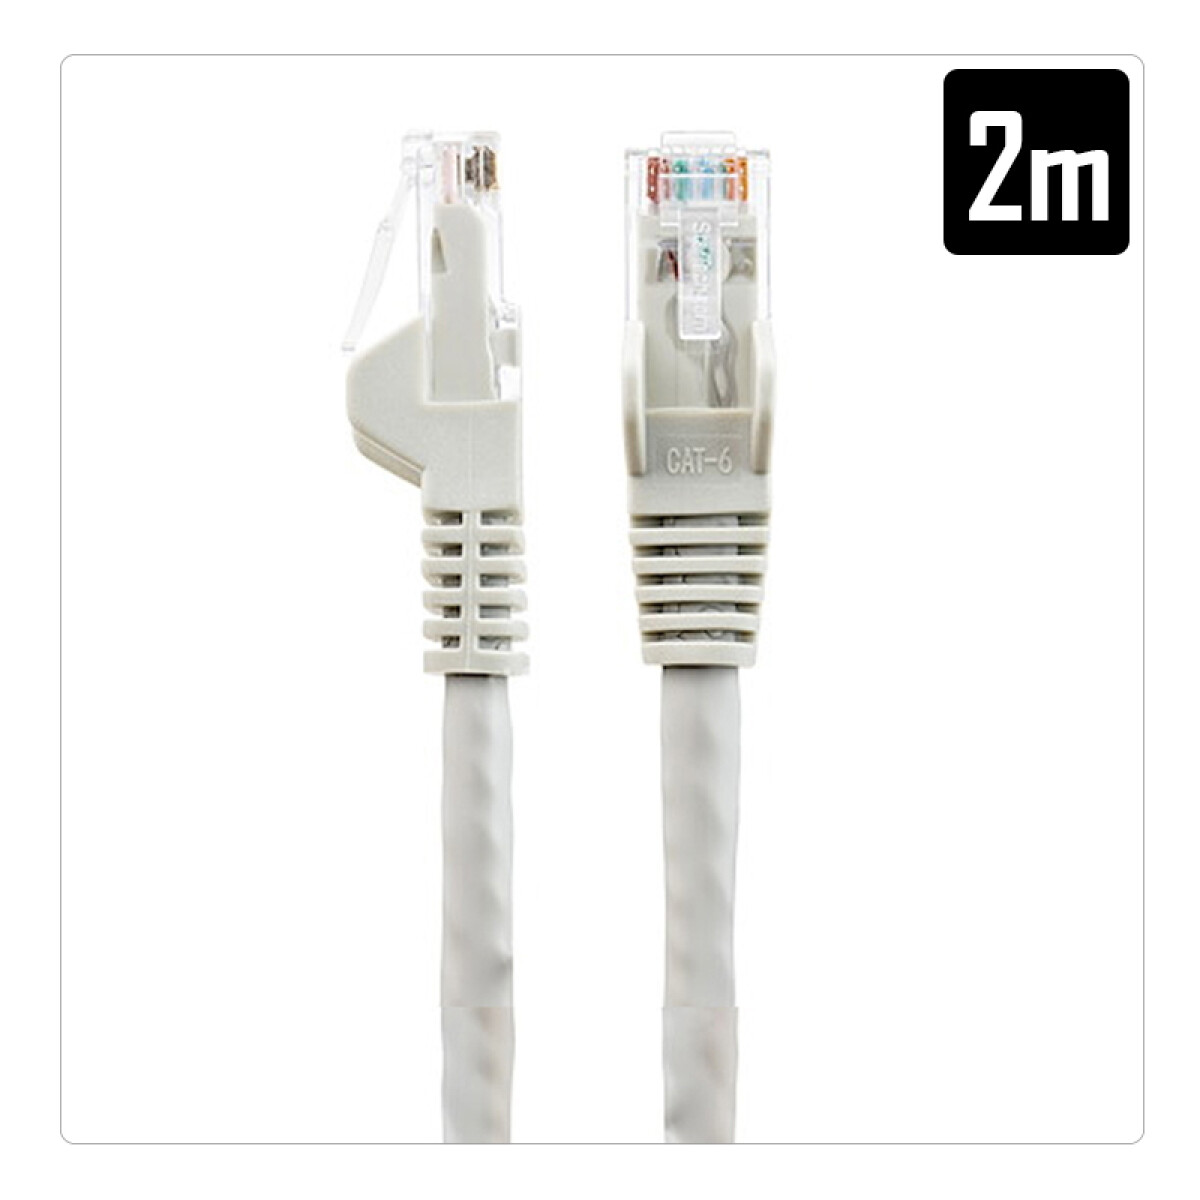 Cable de red premium 2M - Unica 